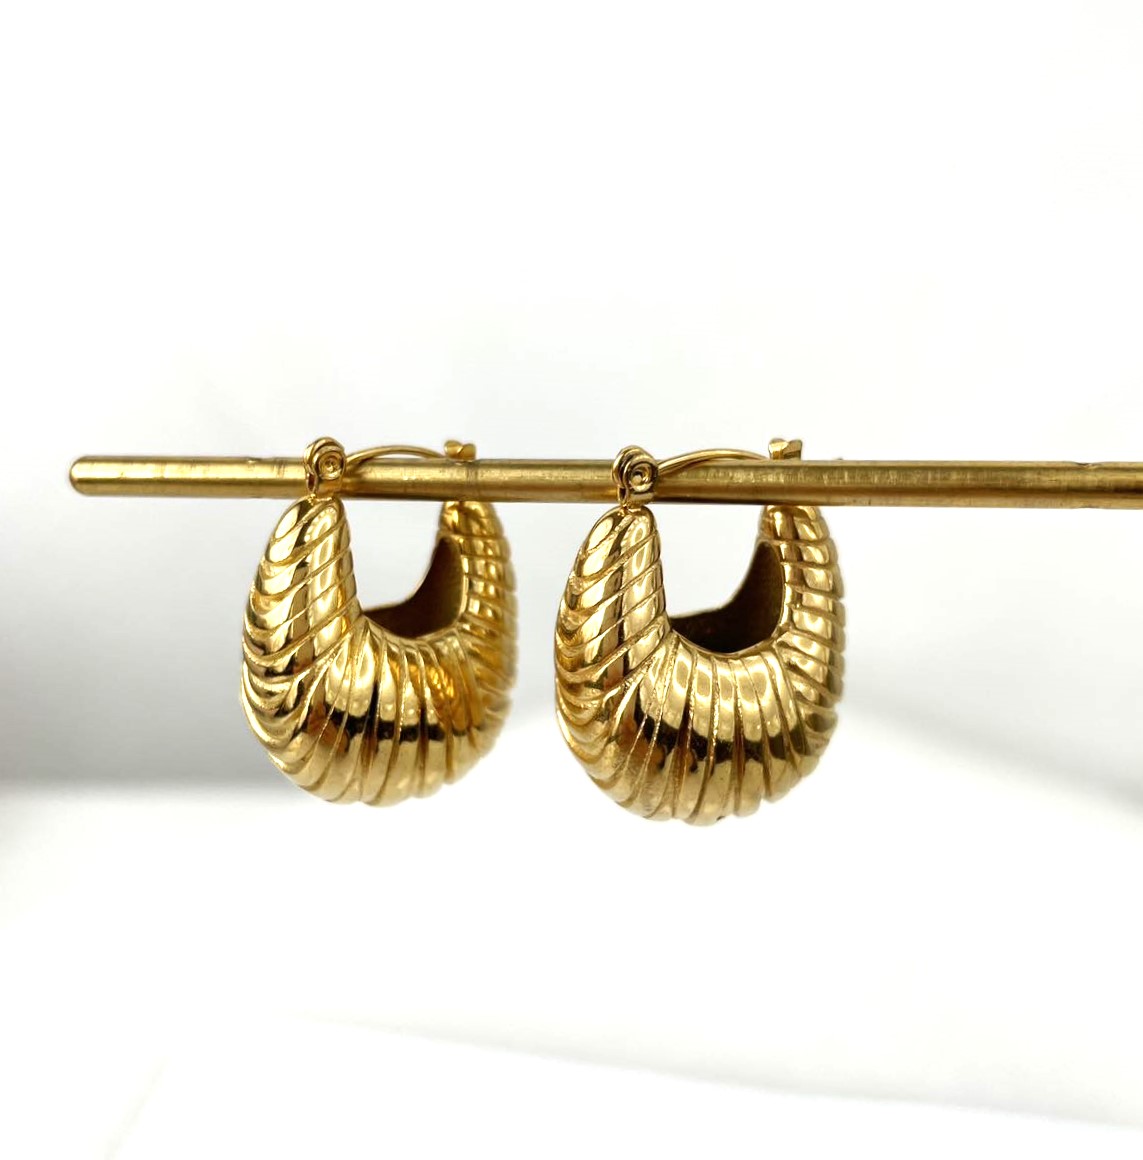 Gold Taschen Stainless Steel Earrings